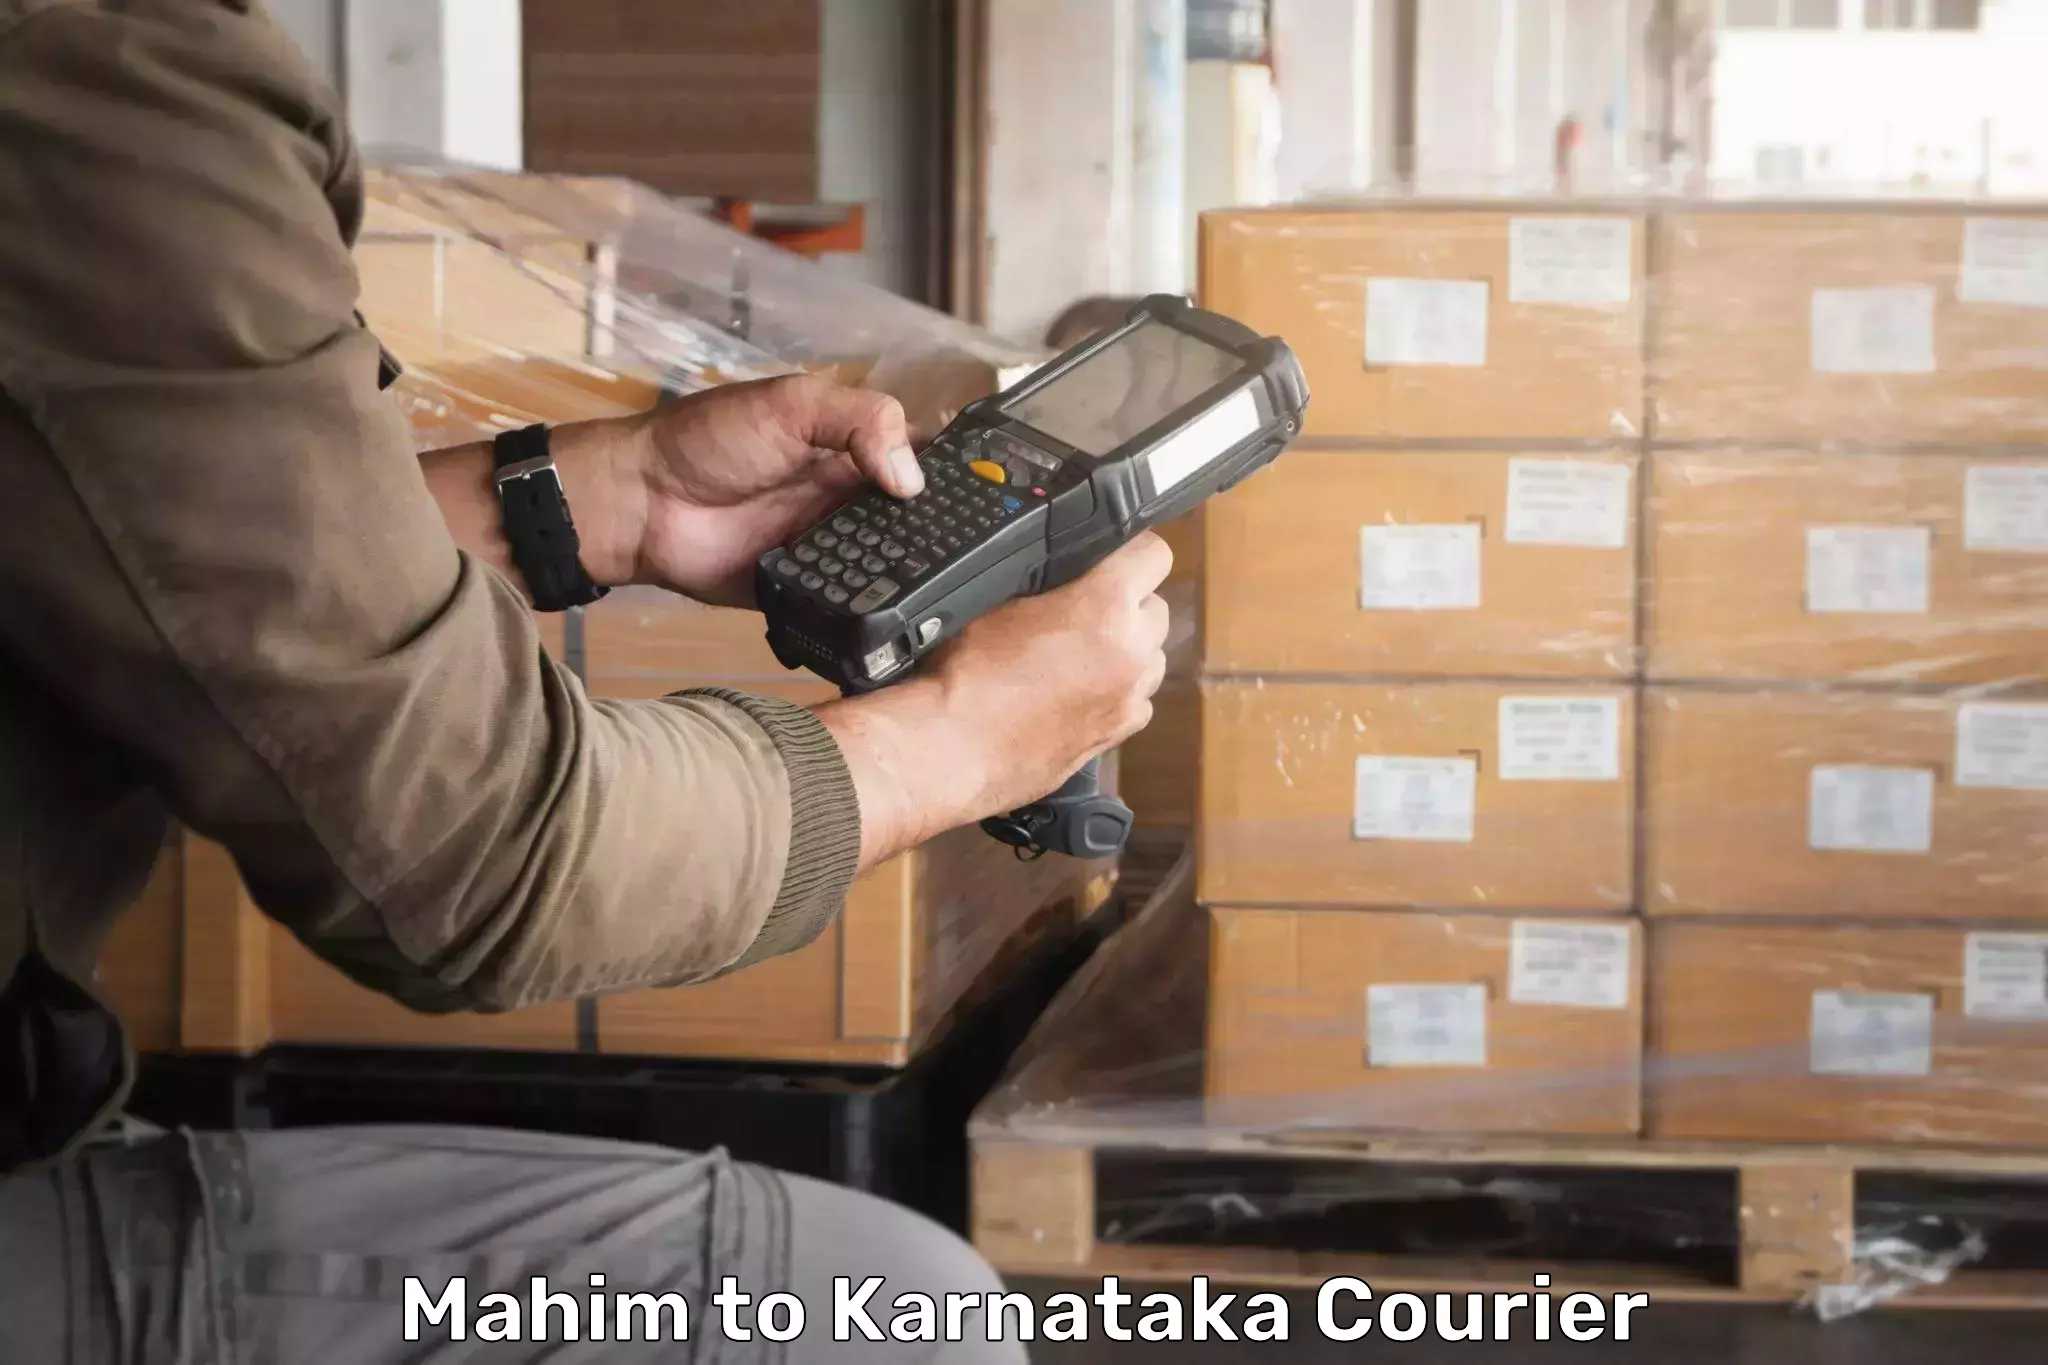 Pharmaceutical courier Mahim to Karnataka